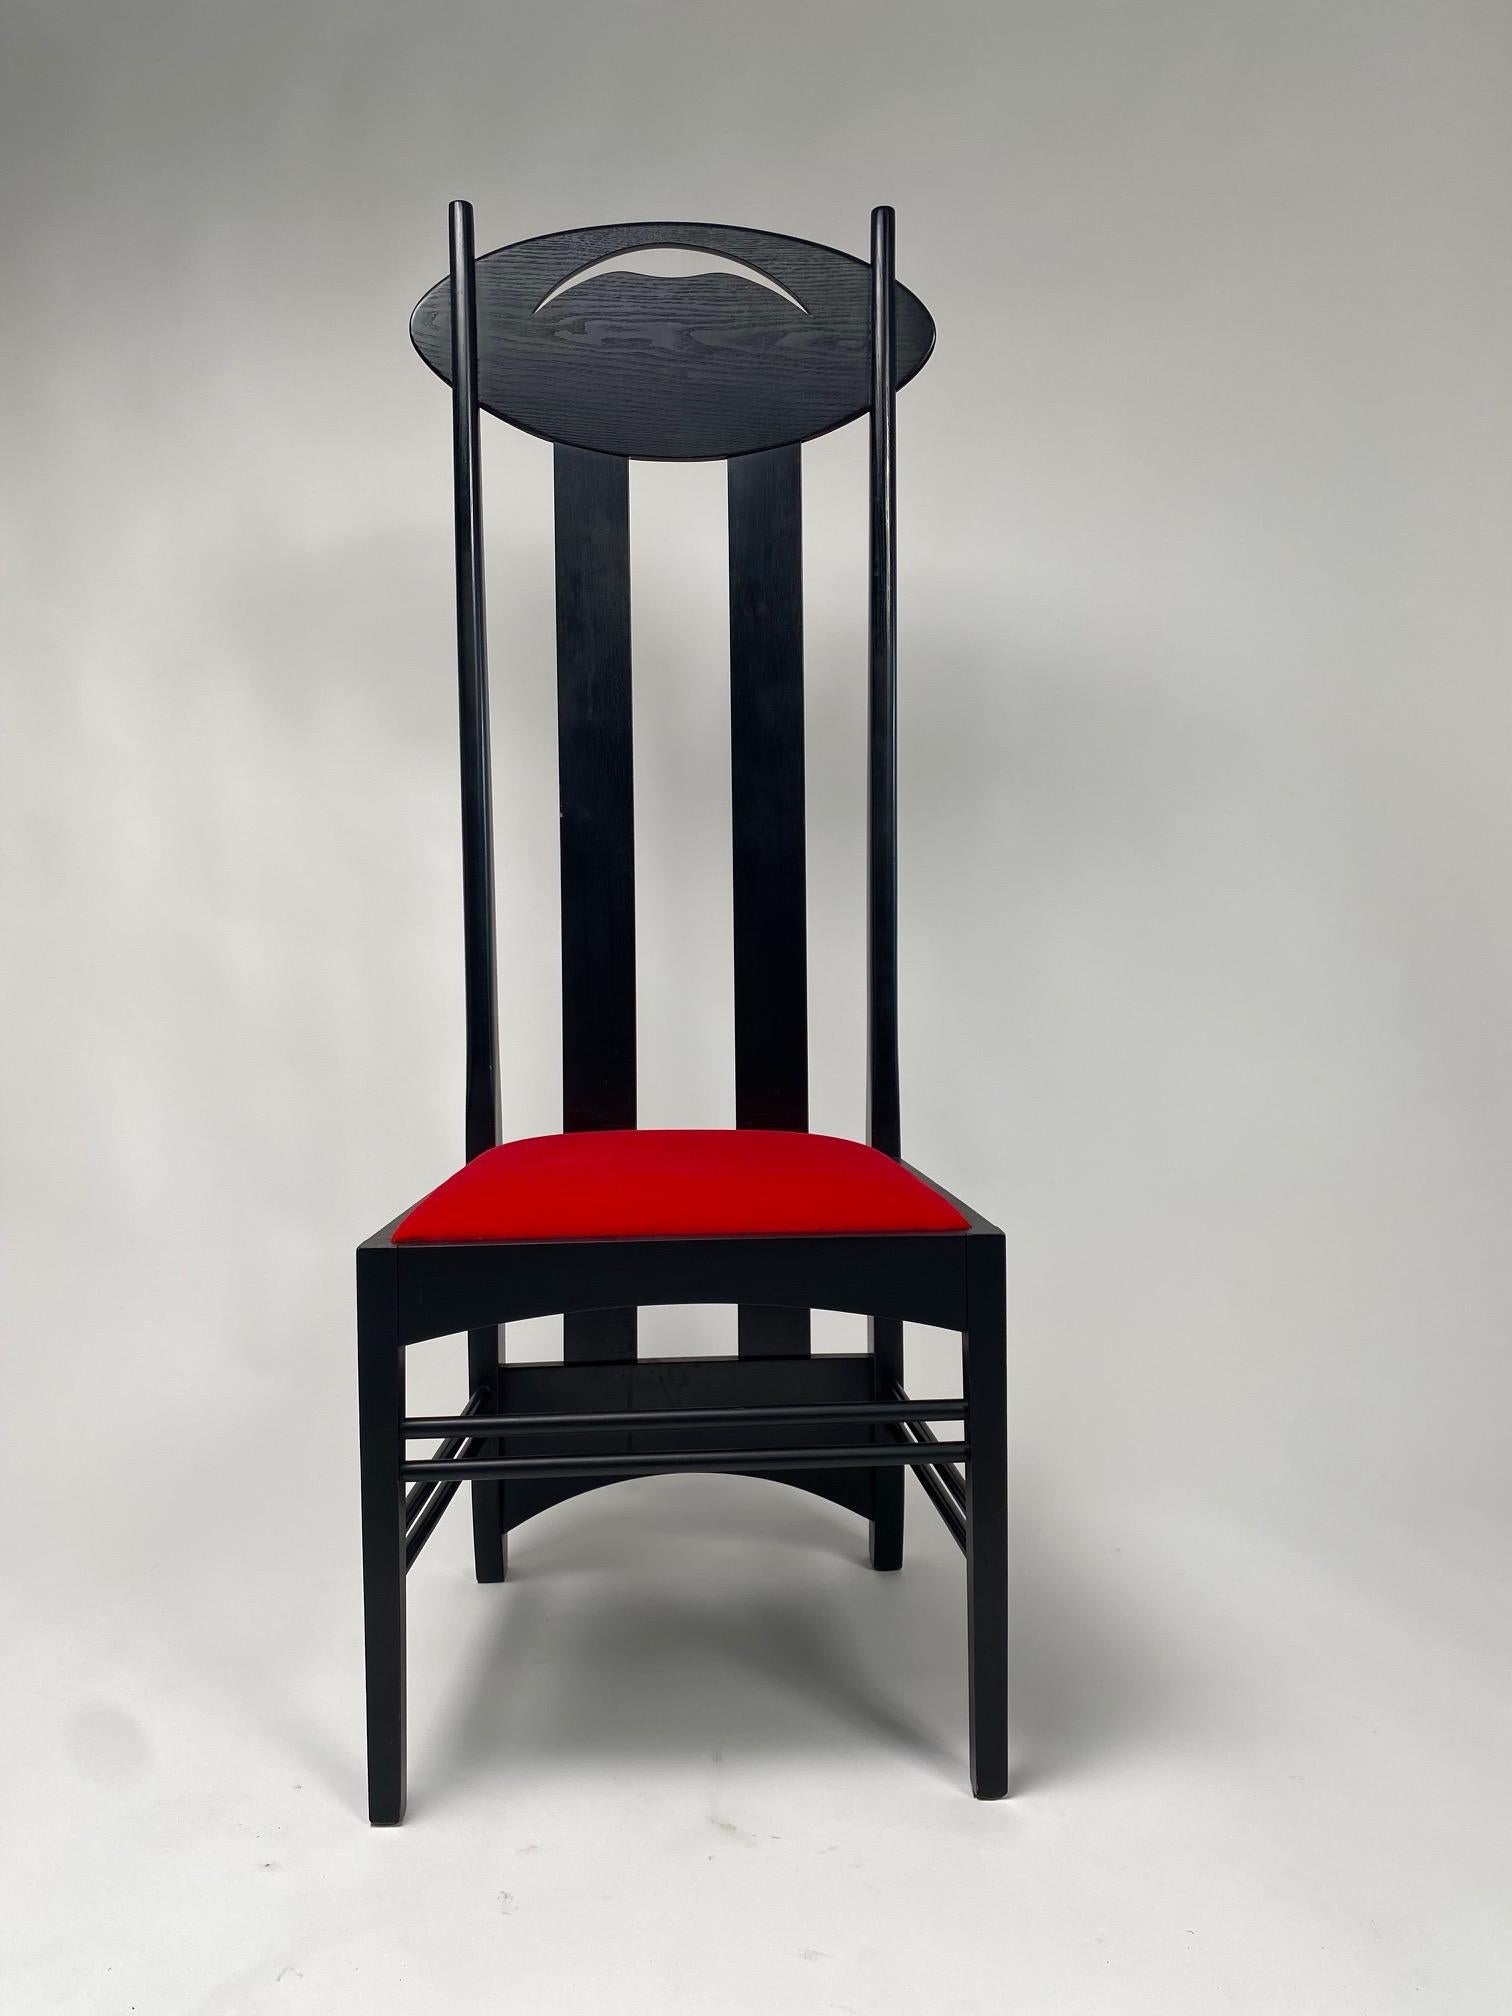 Paire de chaises Argyle par Charles Rennie Mackintosh pour Atelier International, conçues en 1897 et exposées à la huitième exposition de la Sécession à Vienne, en Autriche, en 1900,

C'est l'une des chaises les plus emblématiques du célèbre